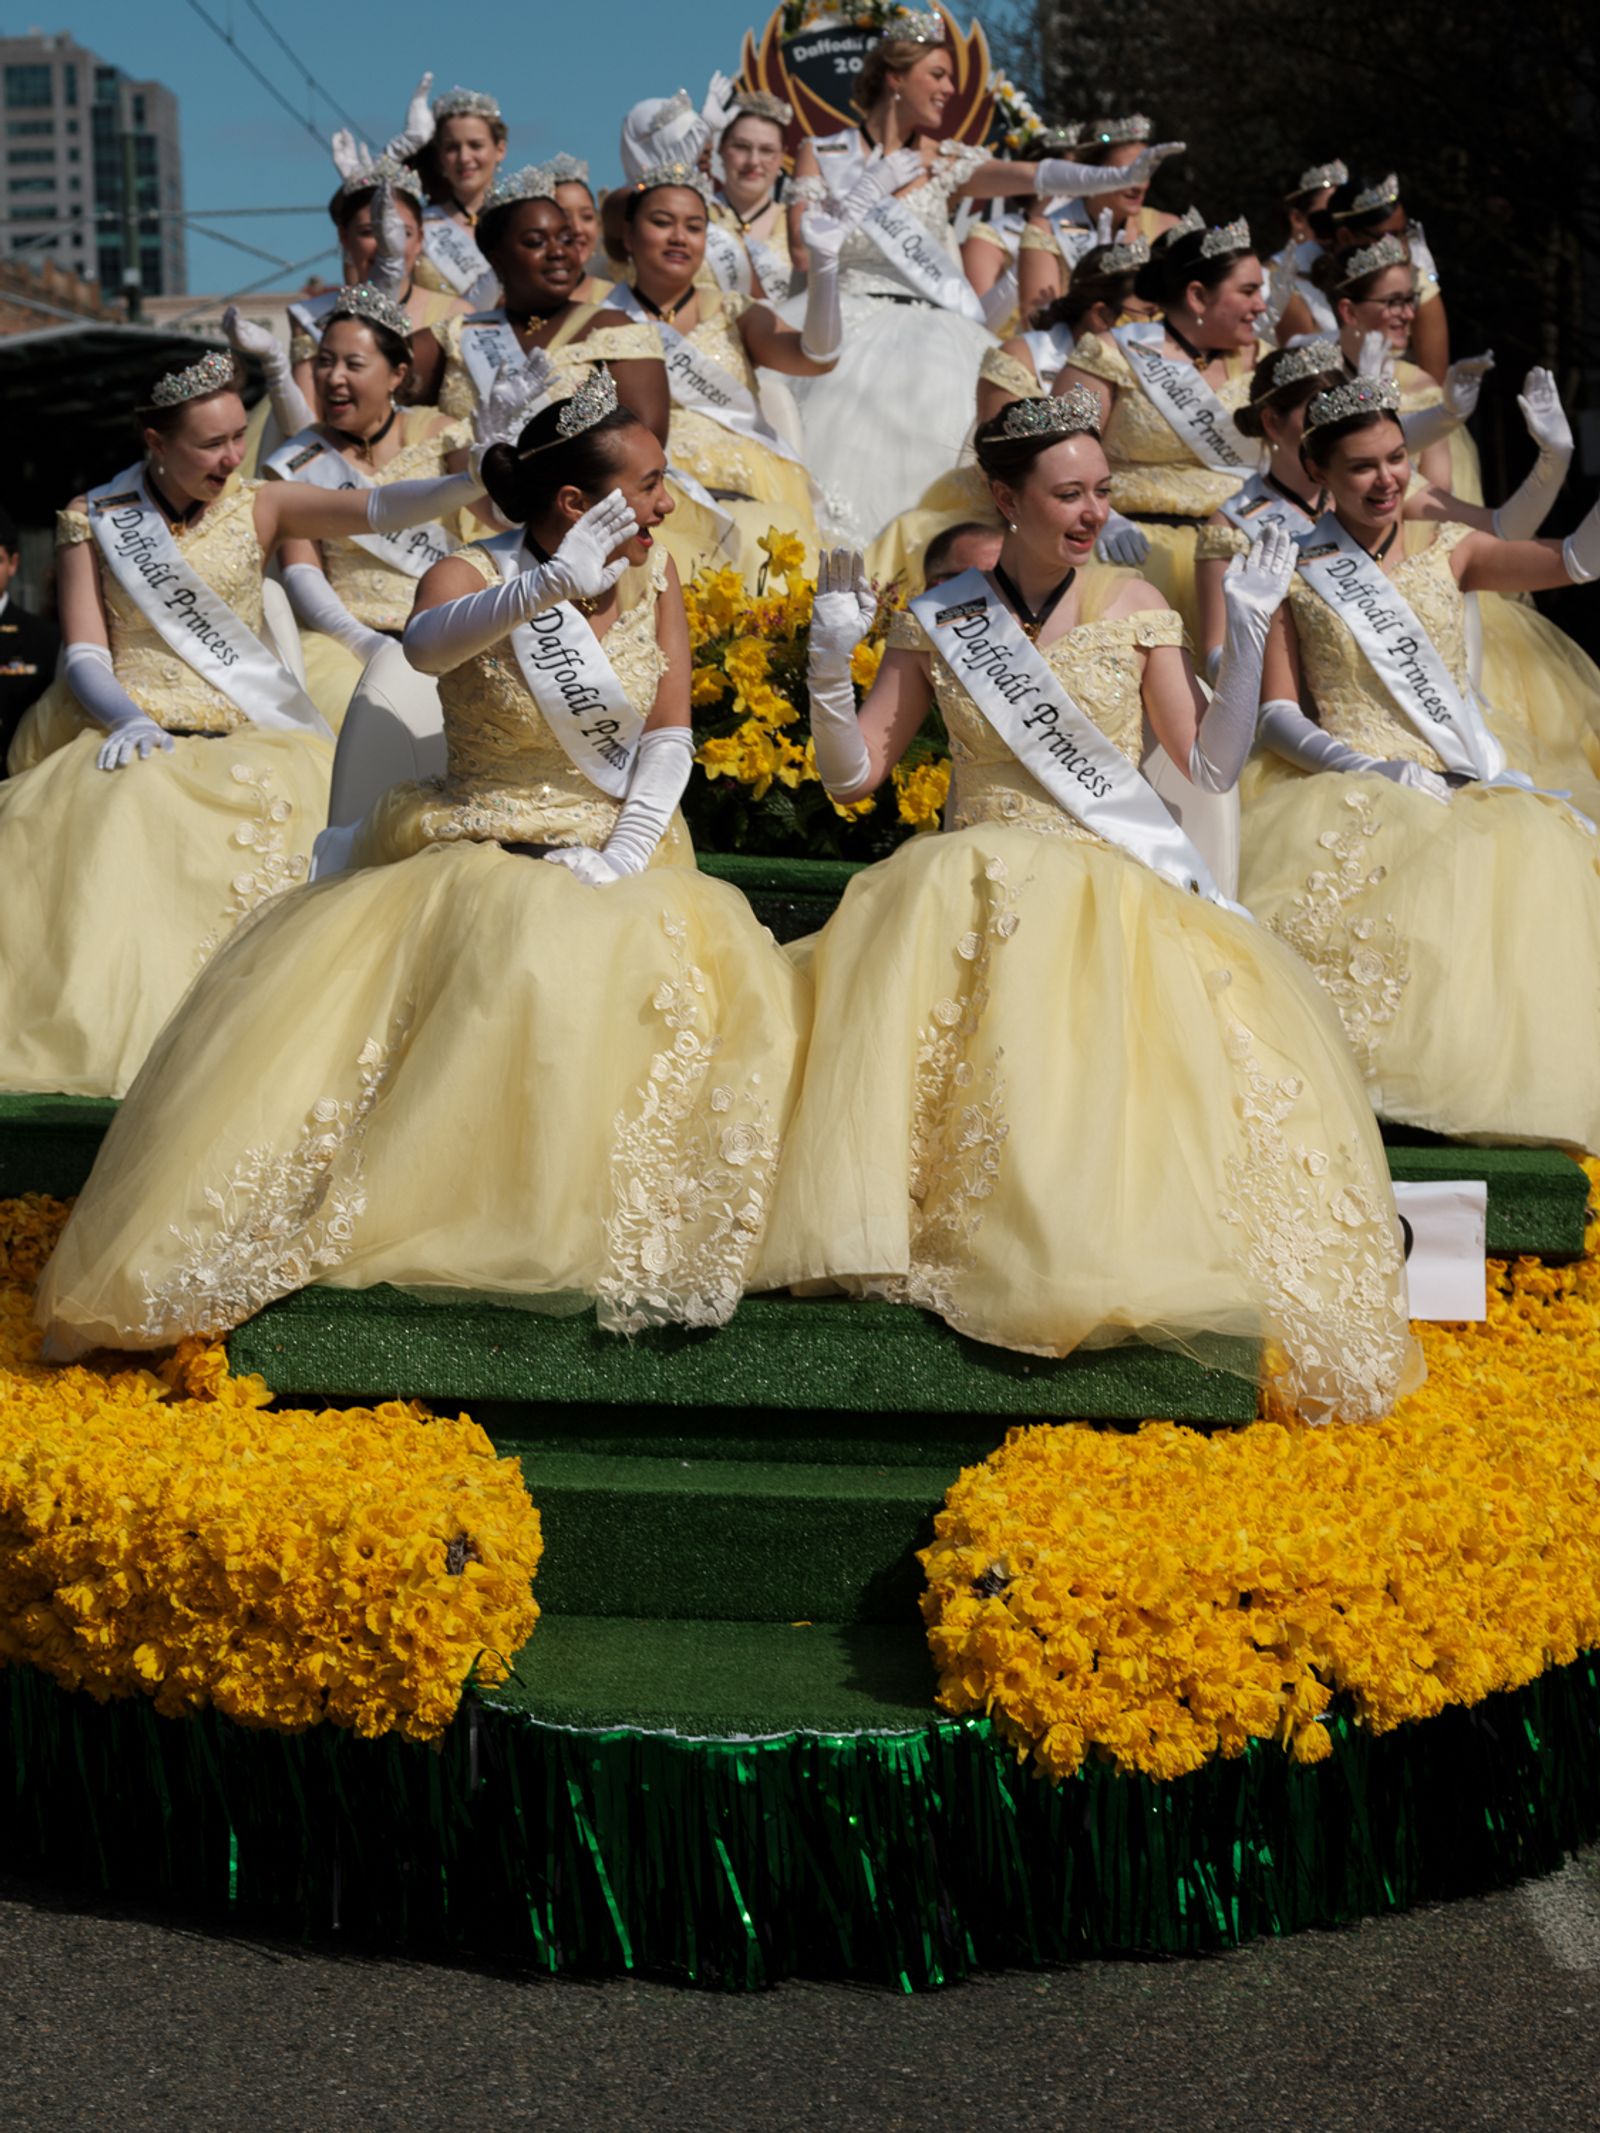 © Alana Celii - The 2022 Daffodil Festival Parade and princess float in Tacoma, WA.